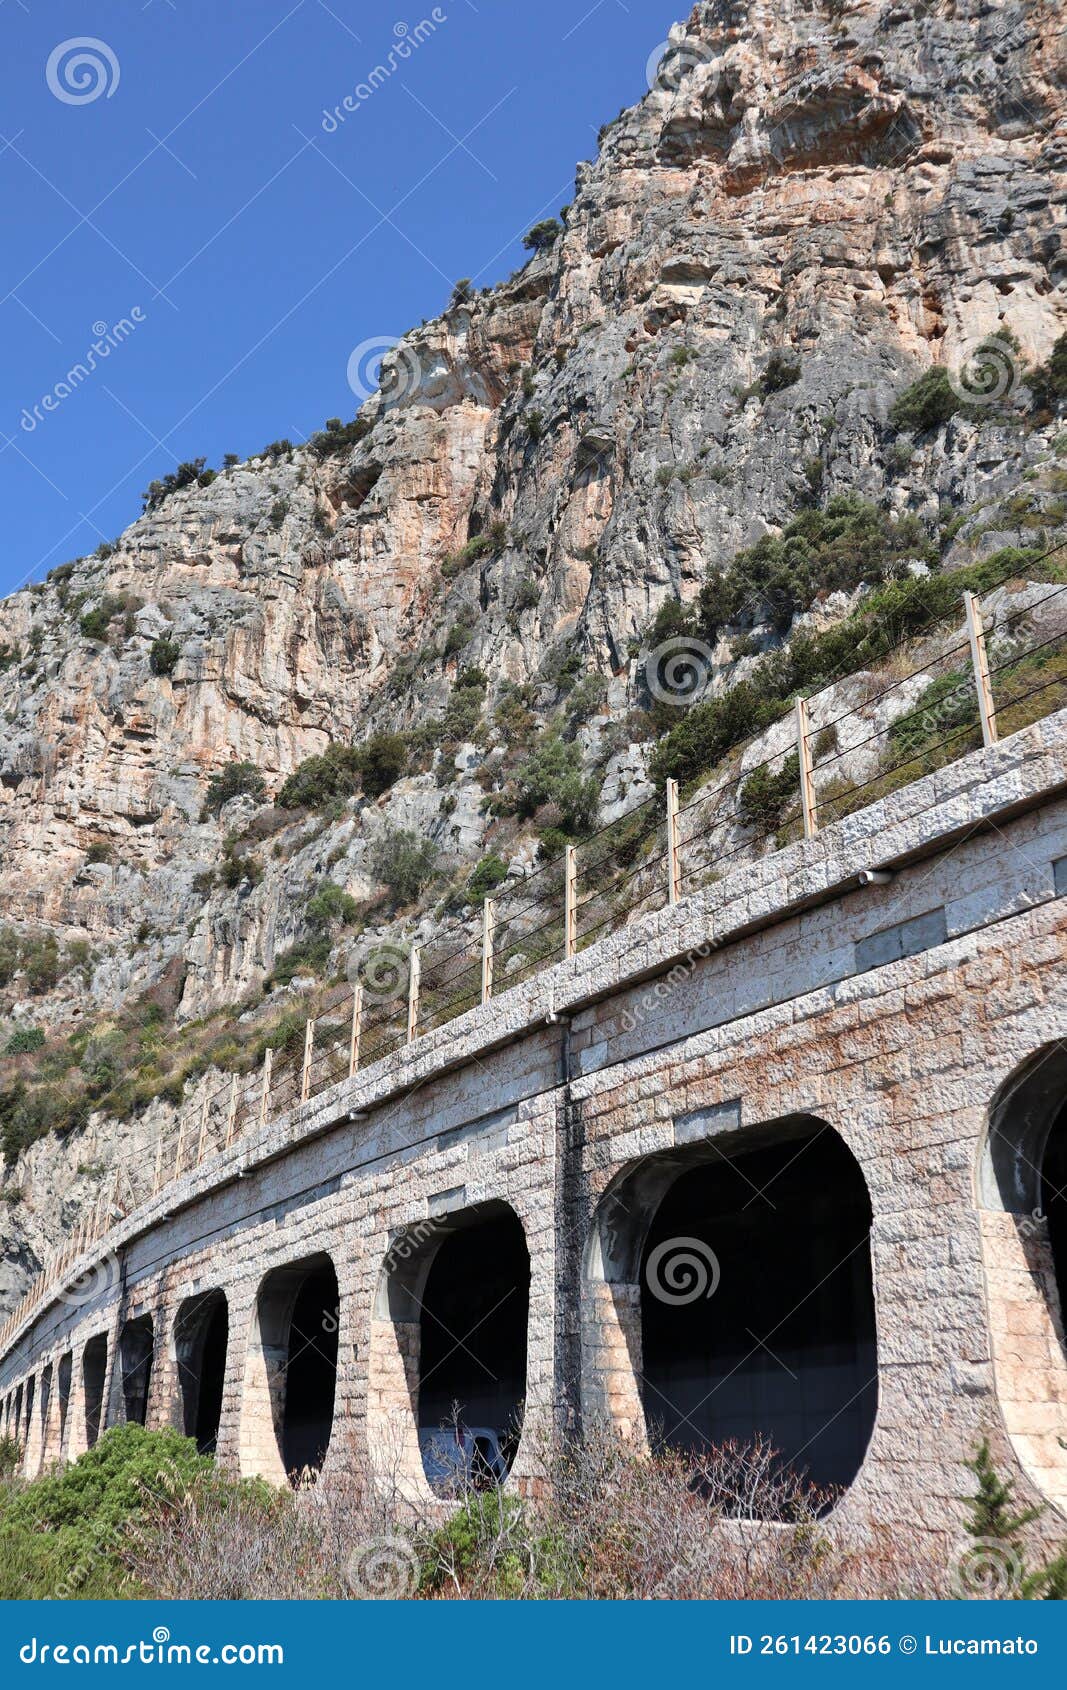 gaeta - galleria della via flacca sulla costa di itri